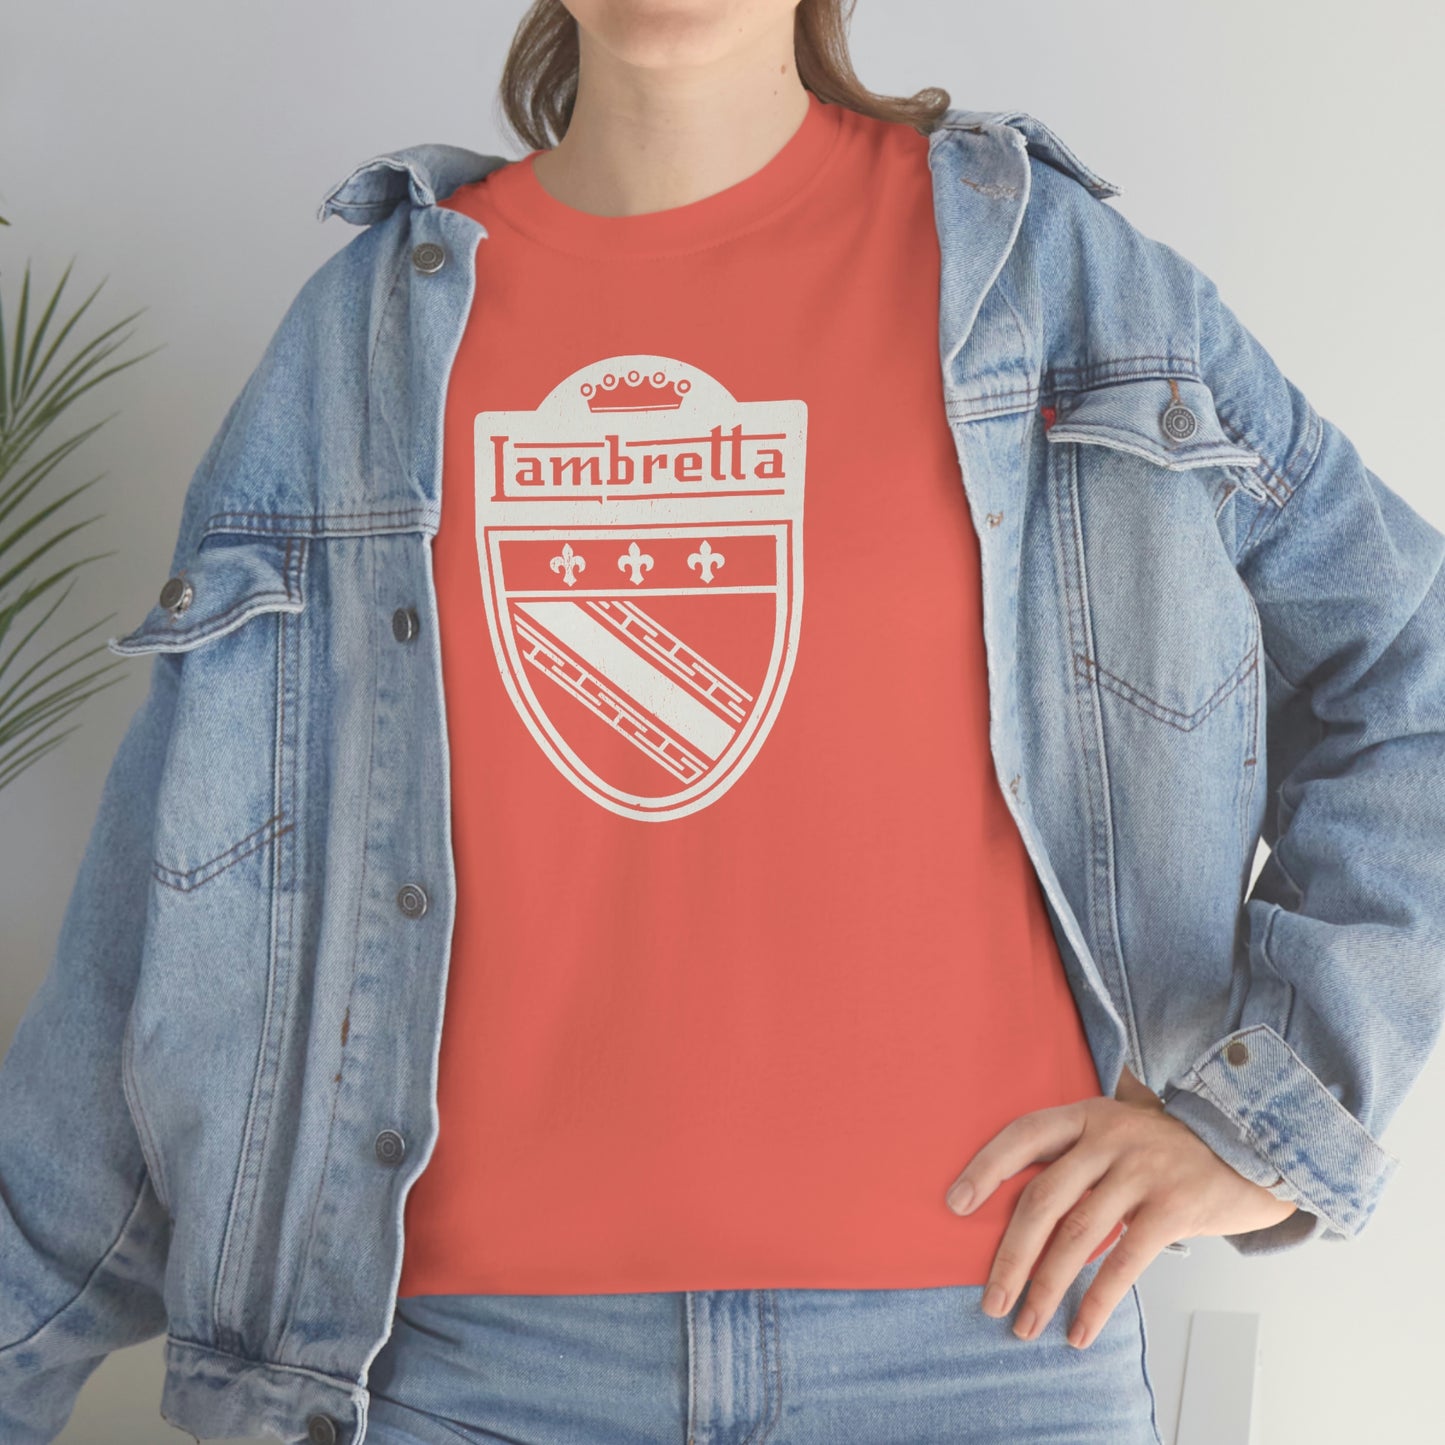 Lambretta T-Shirt